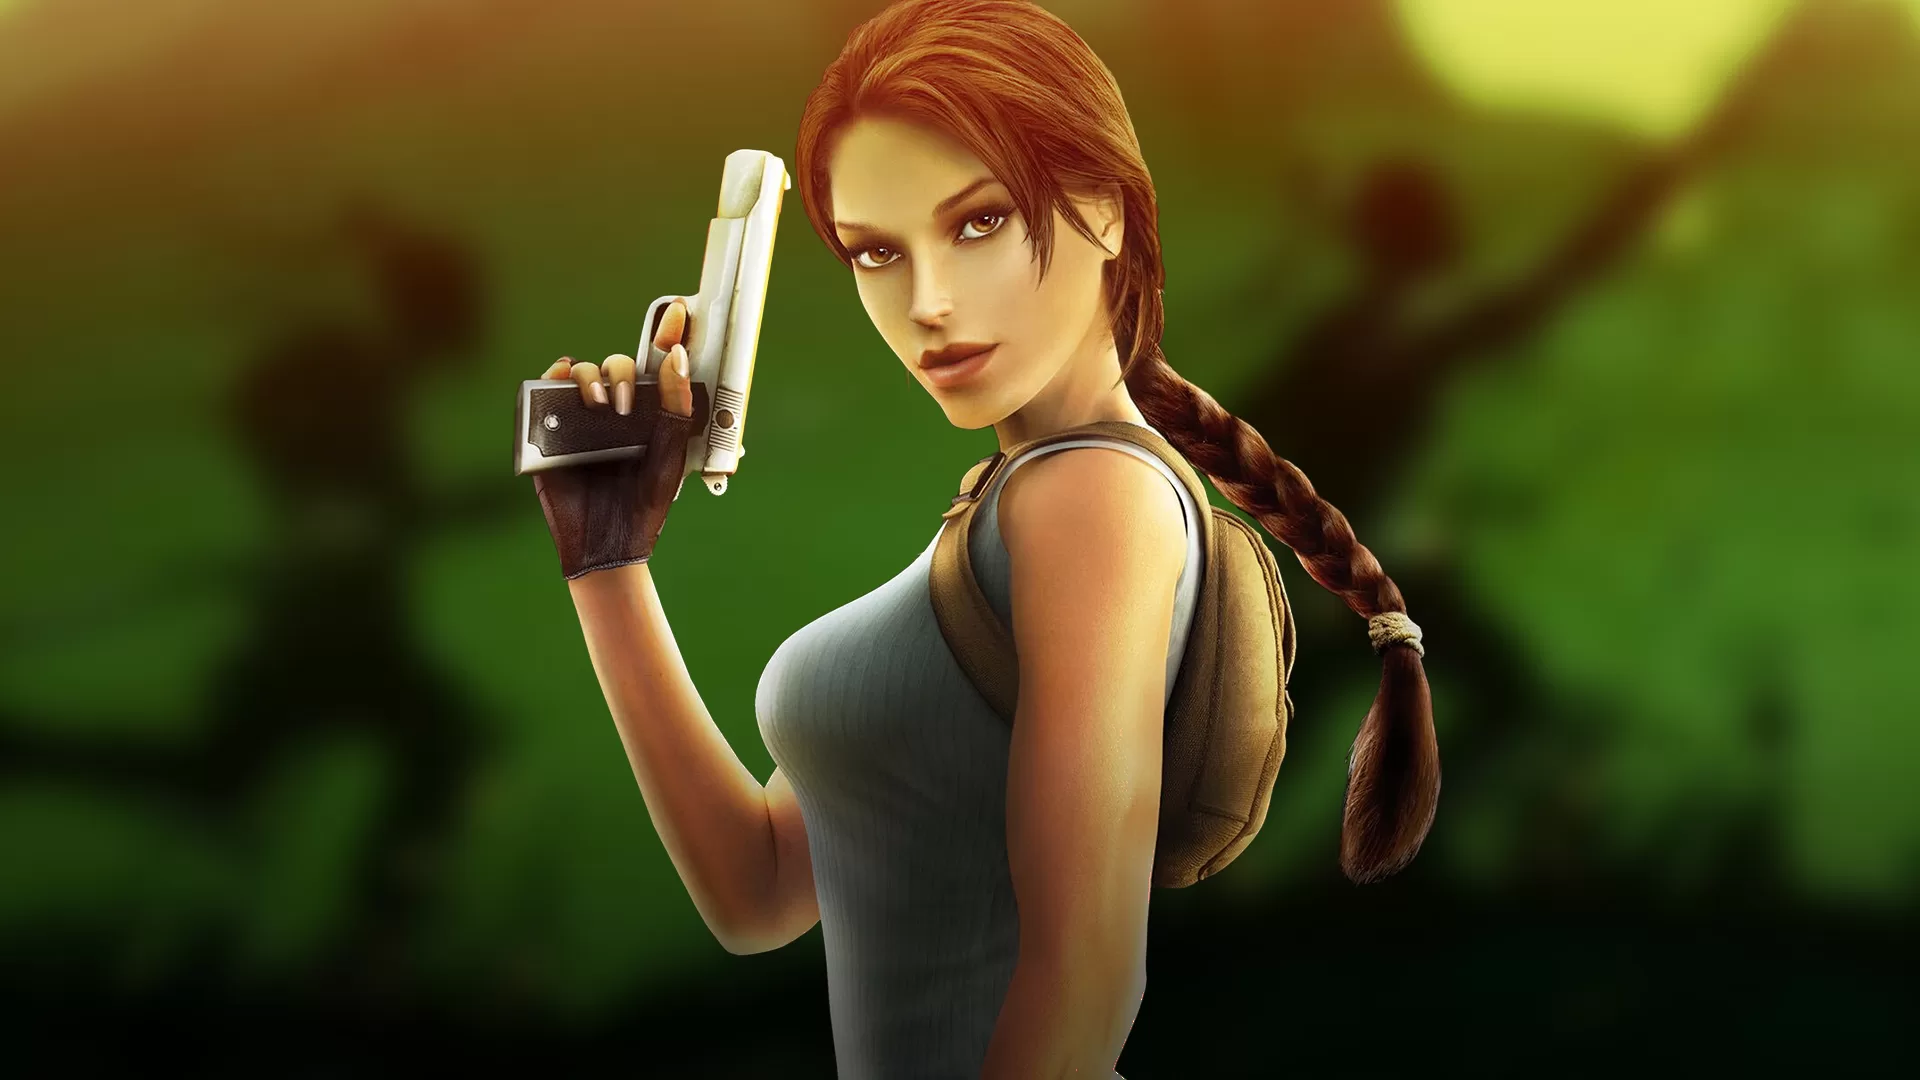 Sob nova direção, Tomb Raider deve ganhar remakes, remasters e spin-offs